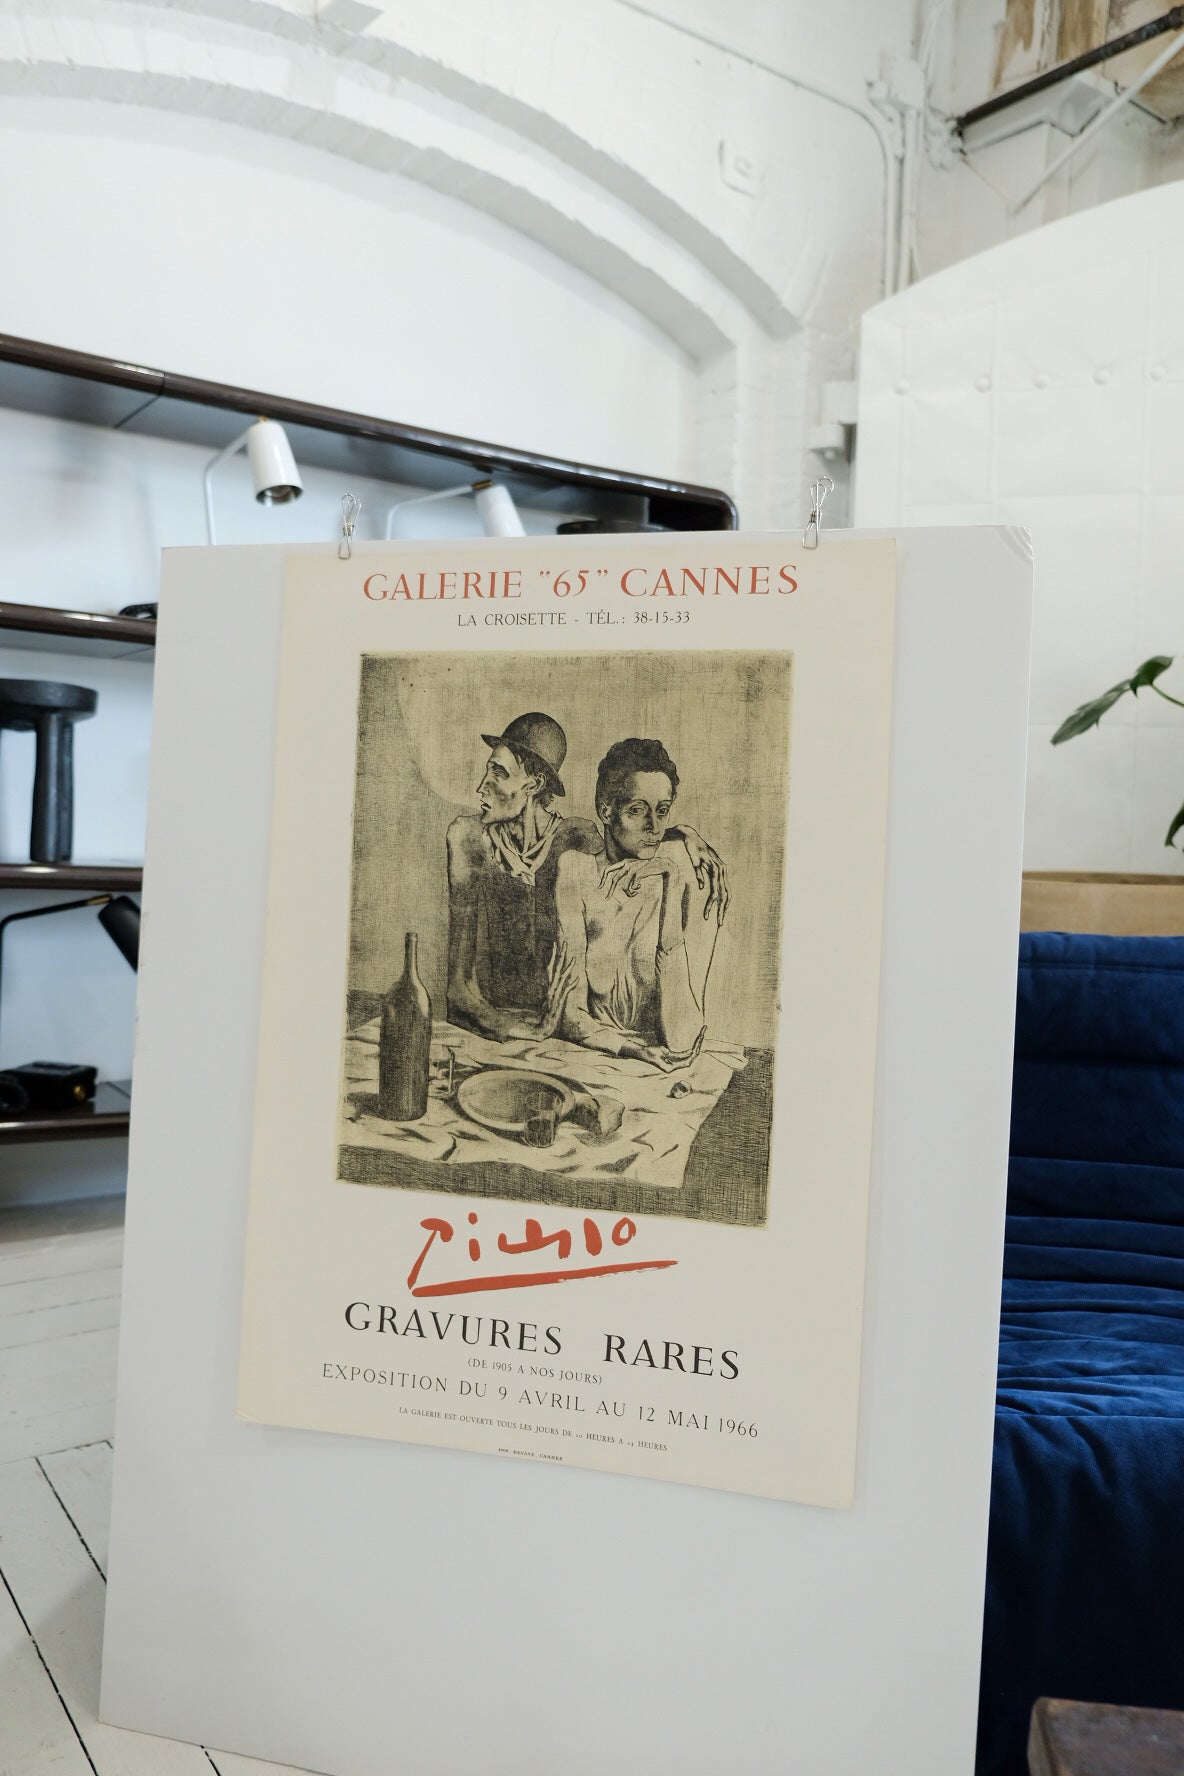 Pablo Picasso Gravures Rares Galerie "65" Cannes